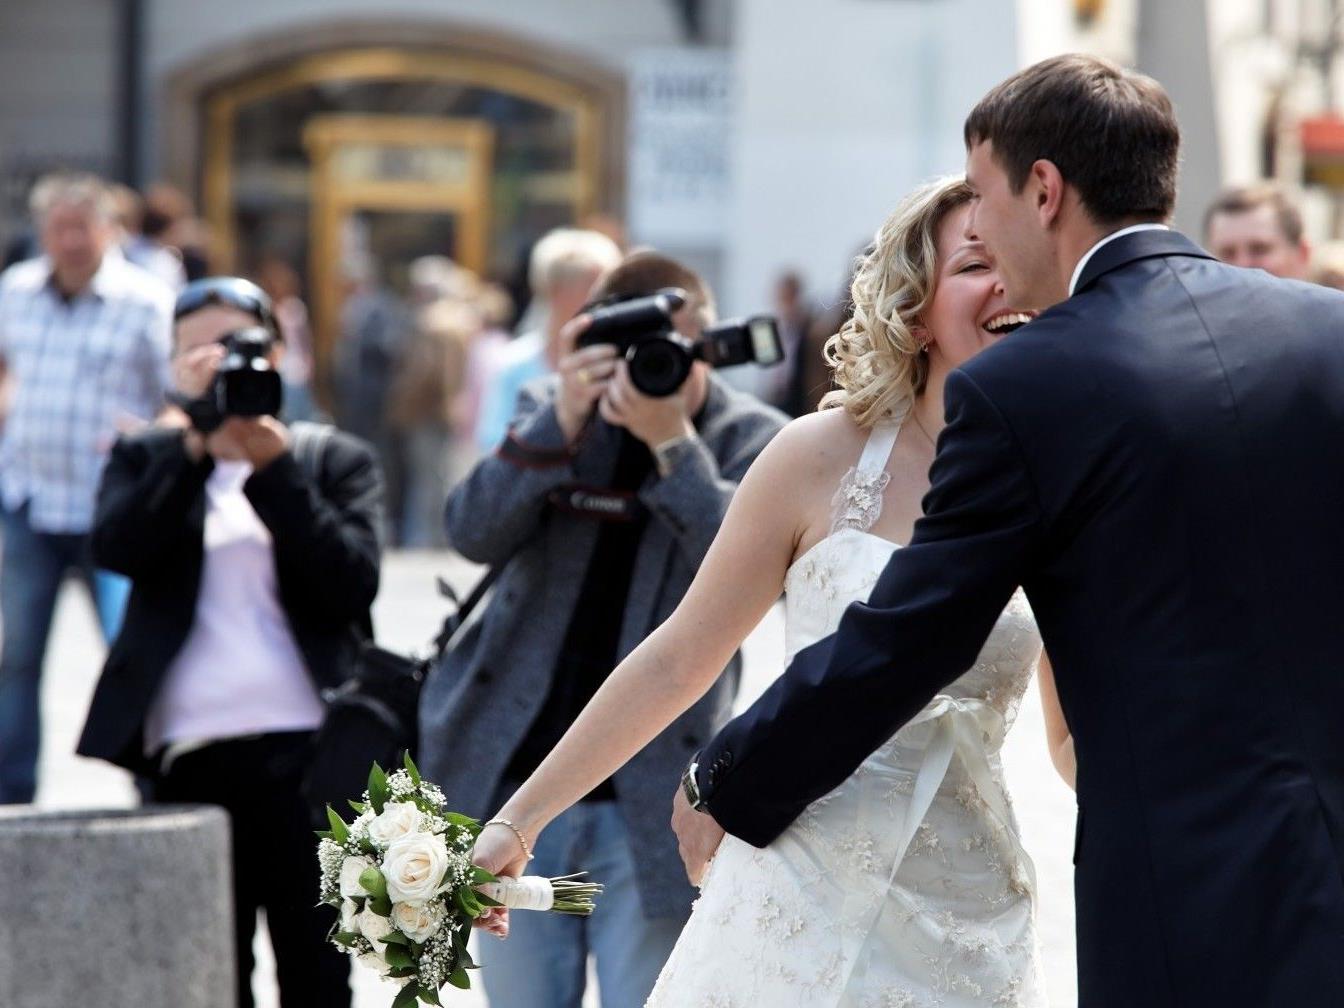 In Wien gab es im Jahr 2012 erneut einen Rückgang bei Hochzeiten.